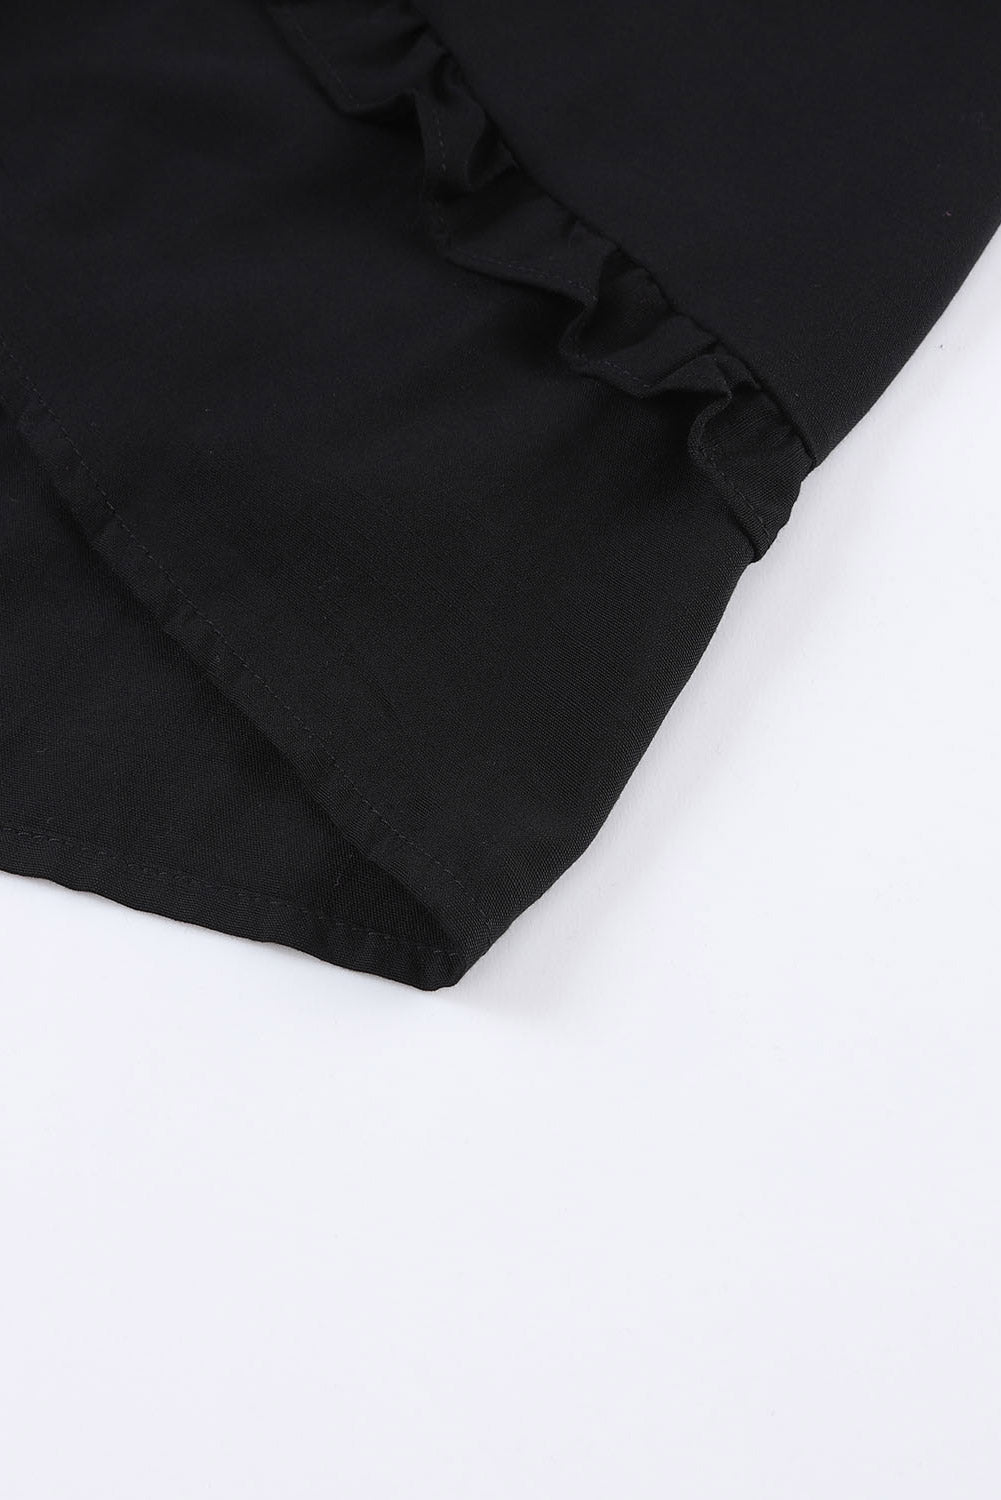 Mini-robe babydoll noire à volants et manches 3/4 à col en V